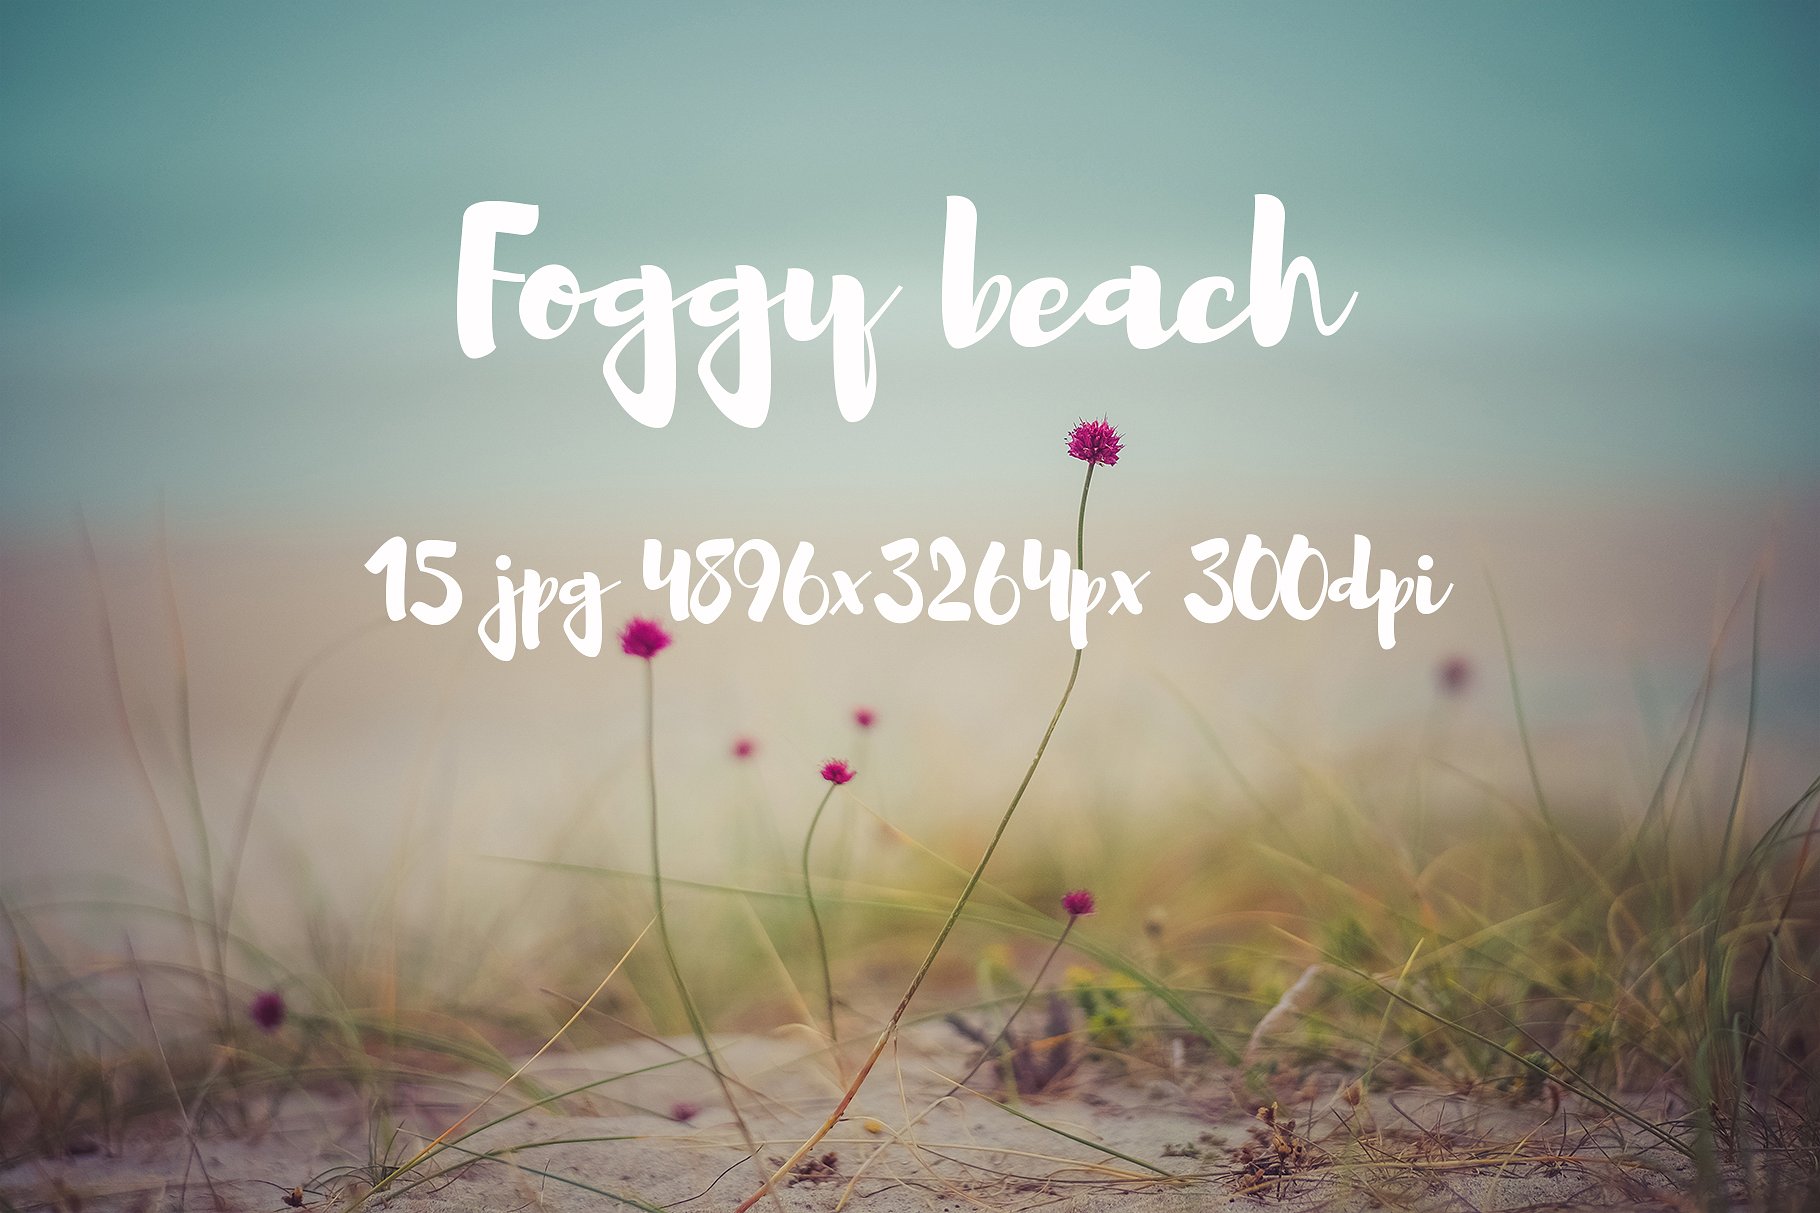 Foggy beach photo pack